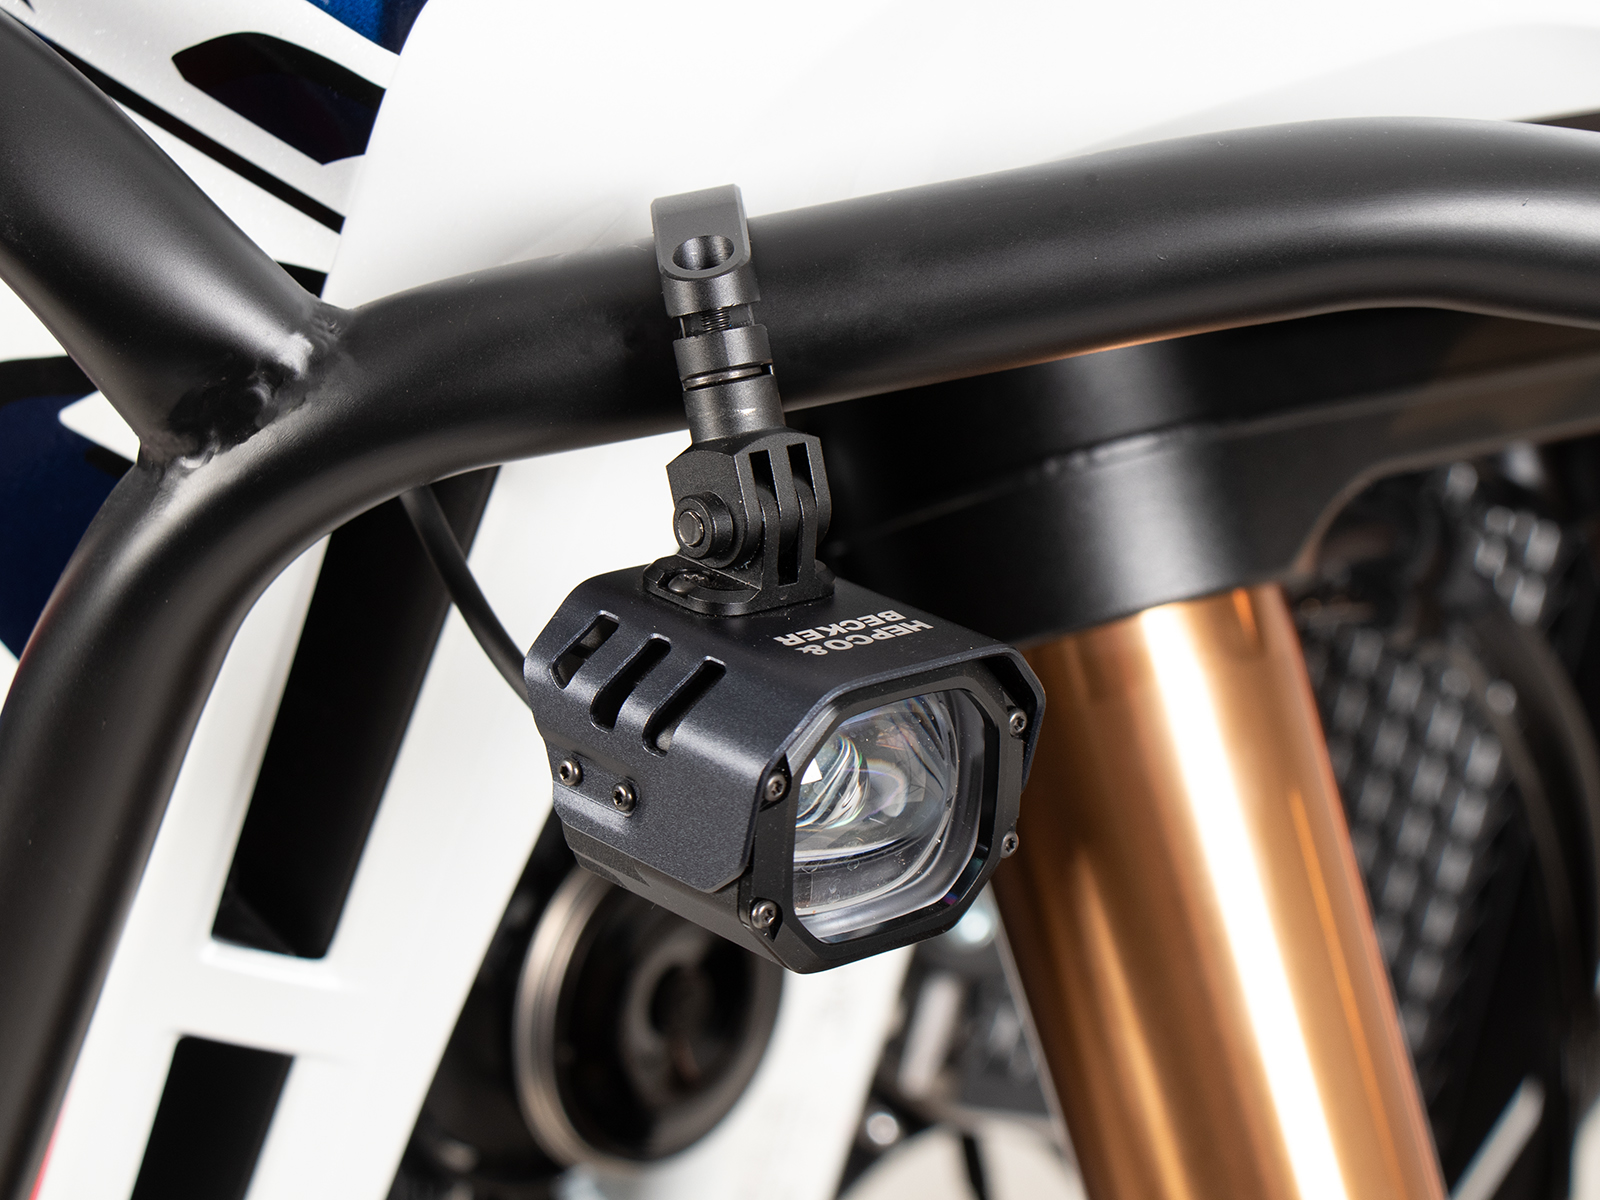 2X Motorrad LED Scheinwerfer Lenker Zusatzscheinwerfer